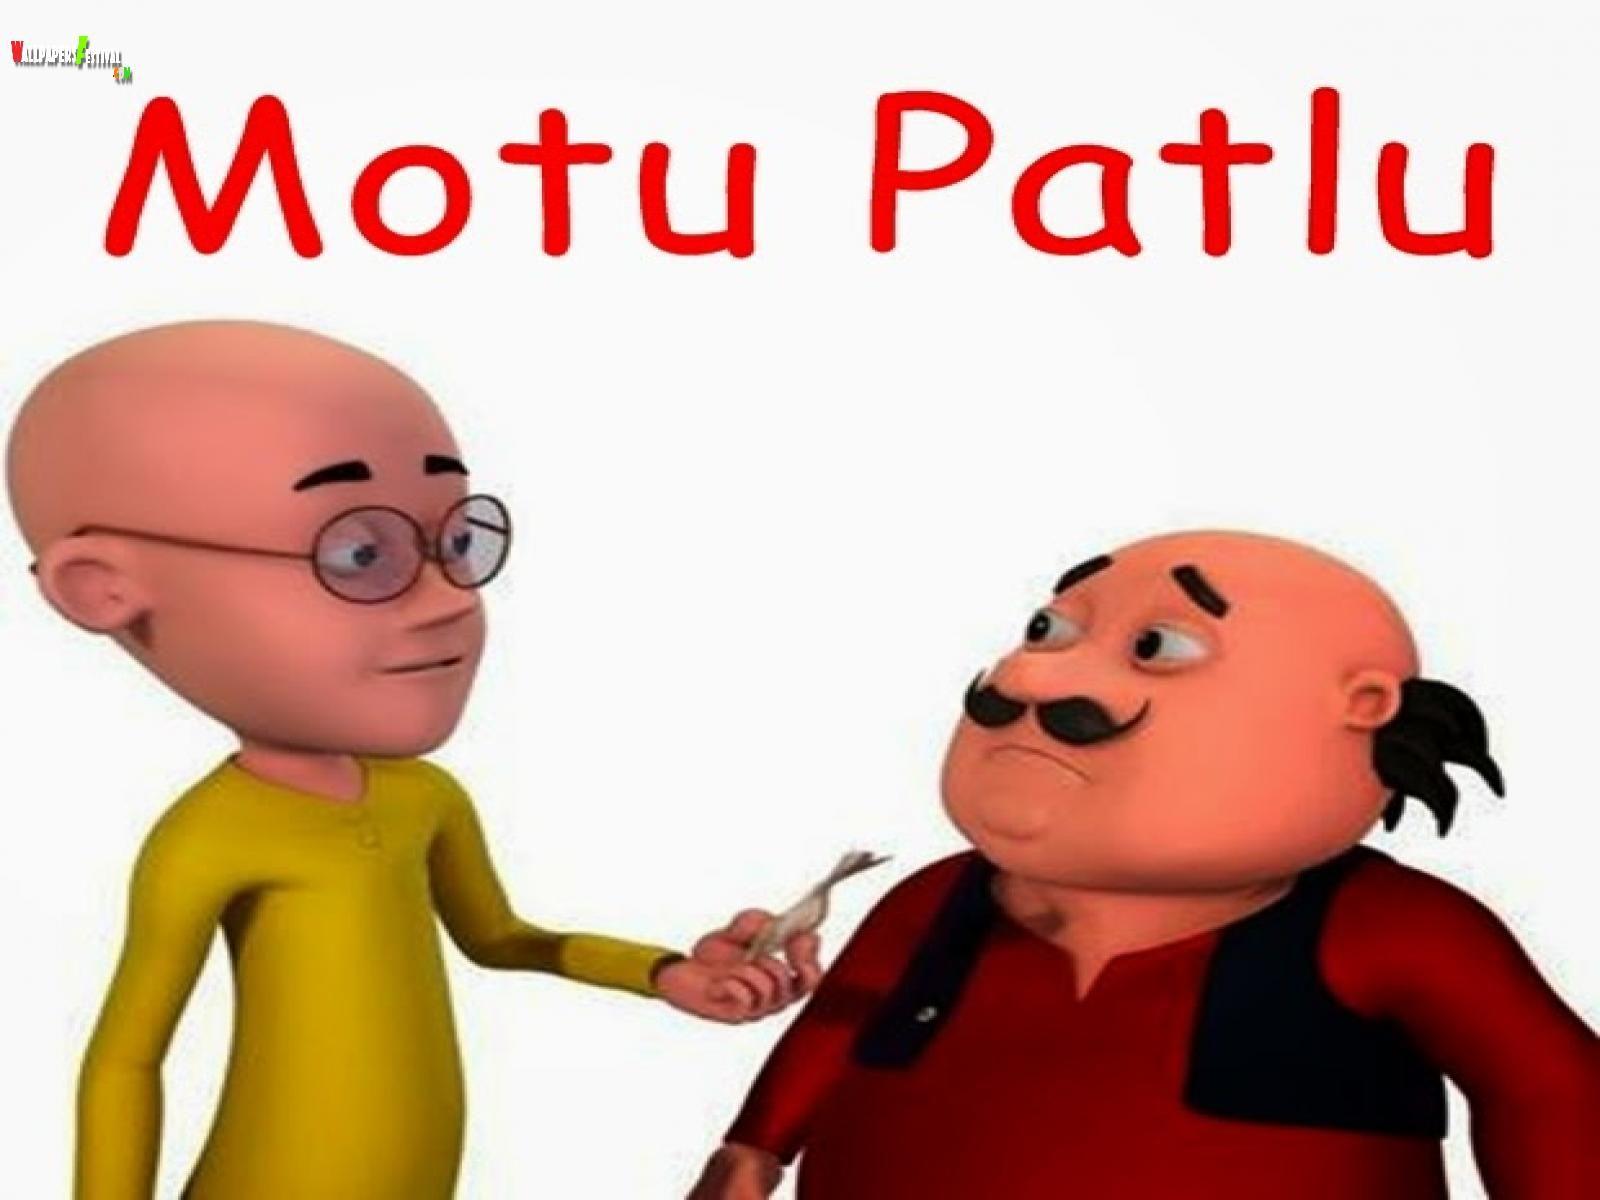 Motu Patlu 1080p Full HD Wallpaper Free Download